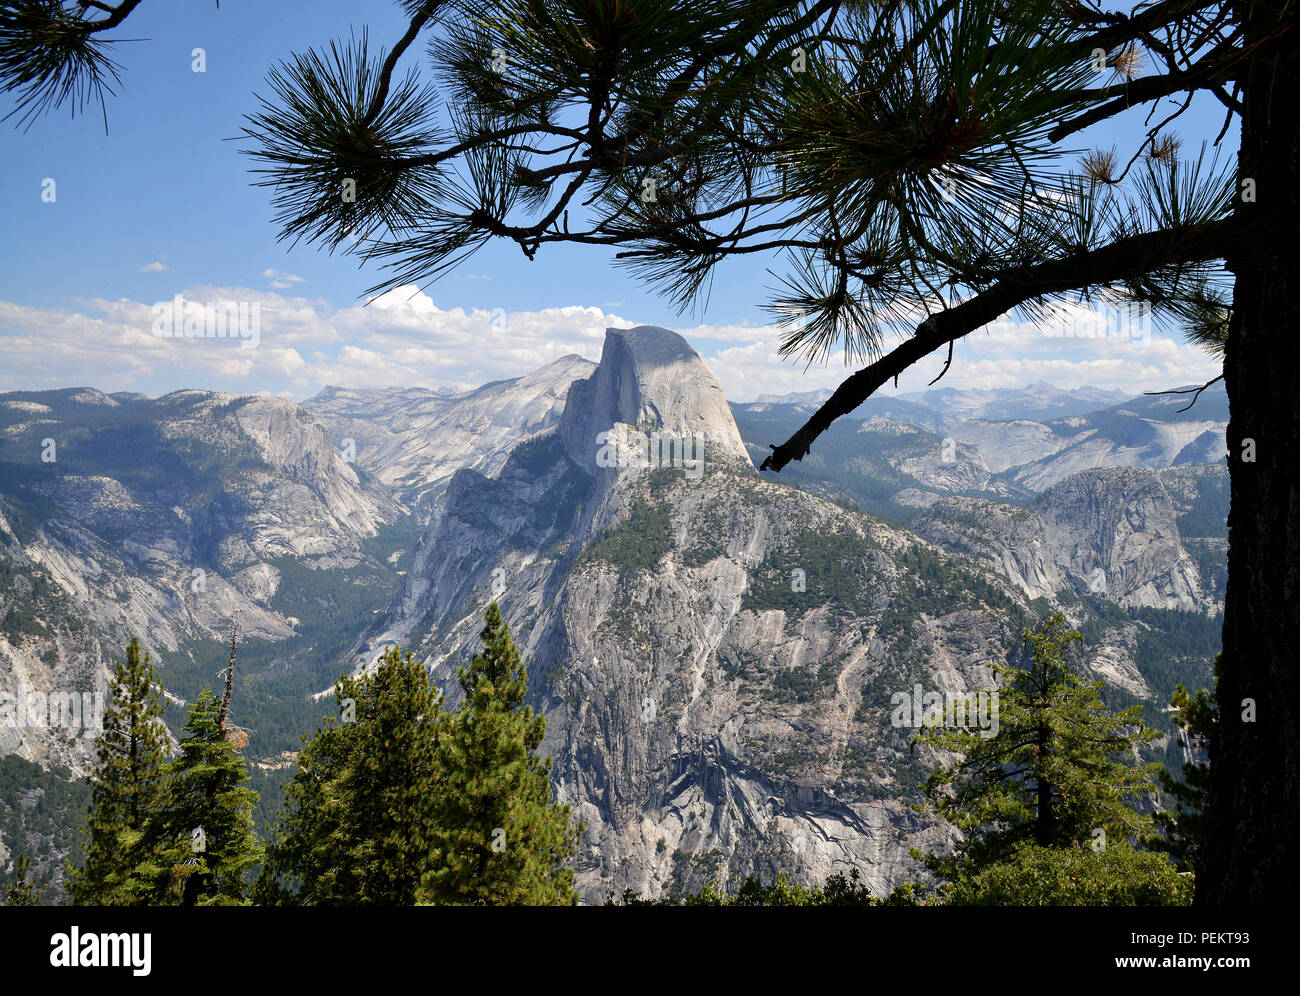 Touristen anzeigen Half Dome im Yosemite National Park, Kalifornien Stockfoto